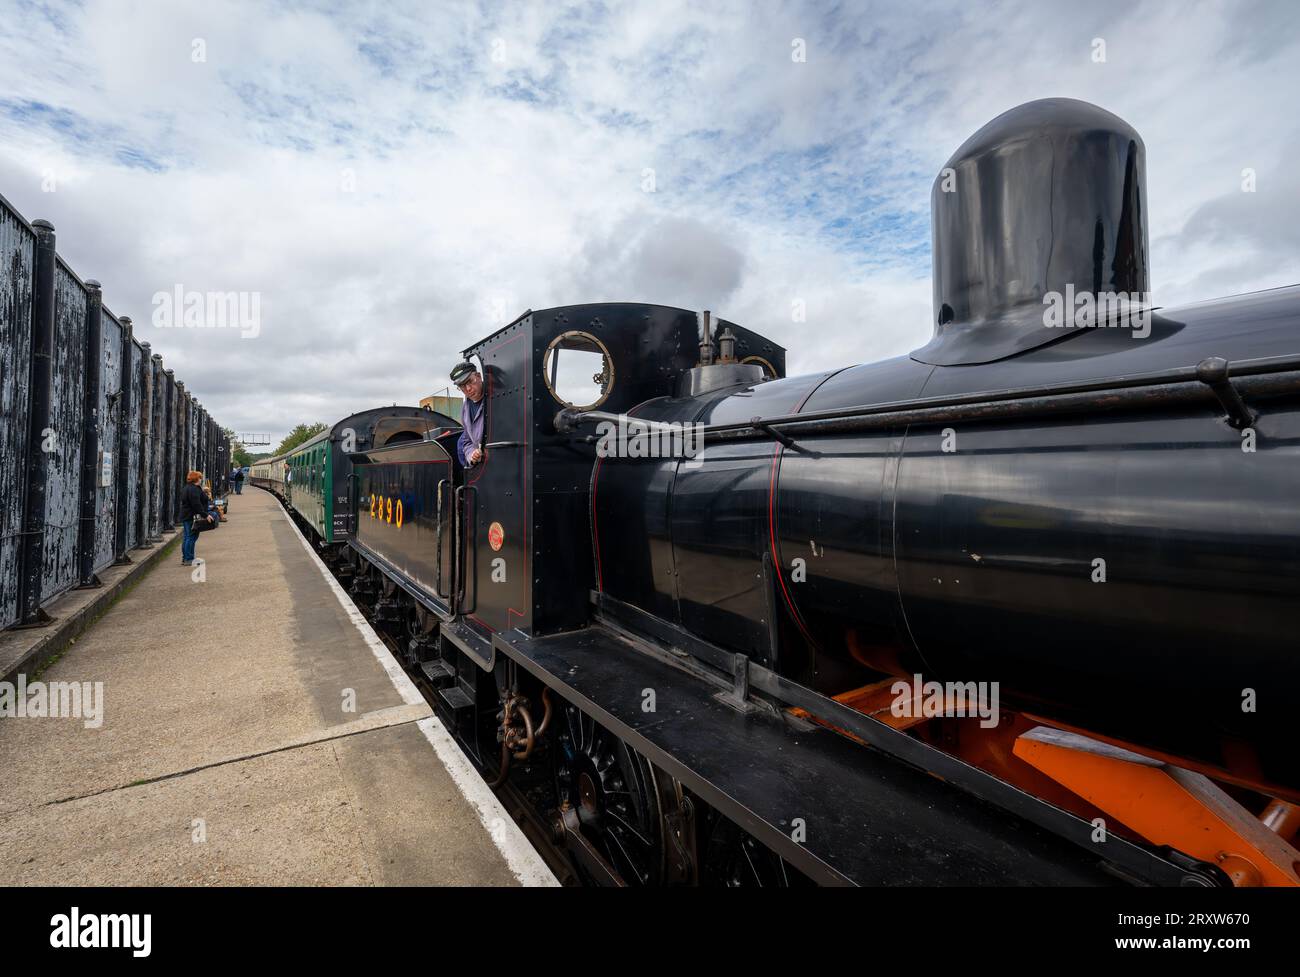 Tunbridge Wells, Kent, Vereinigtes Königreich: Dampfzug 2890, betrieben von der Spa Valley Railway, gesehen am Bahnhof Tunbridge Wells West. Stockfoto